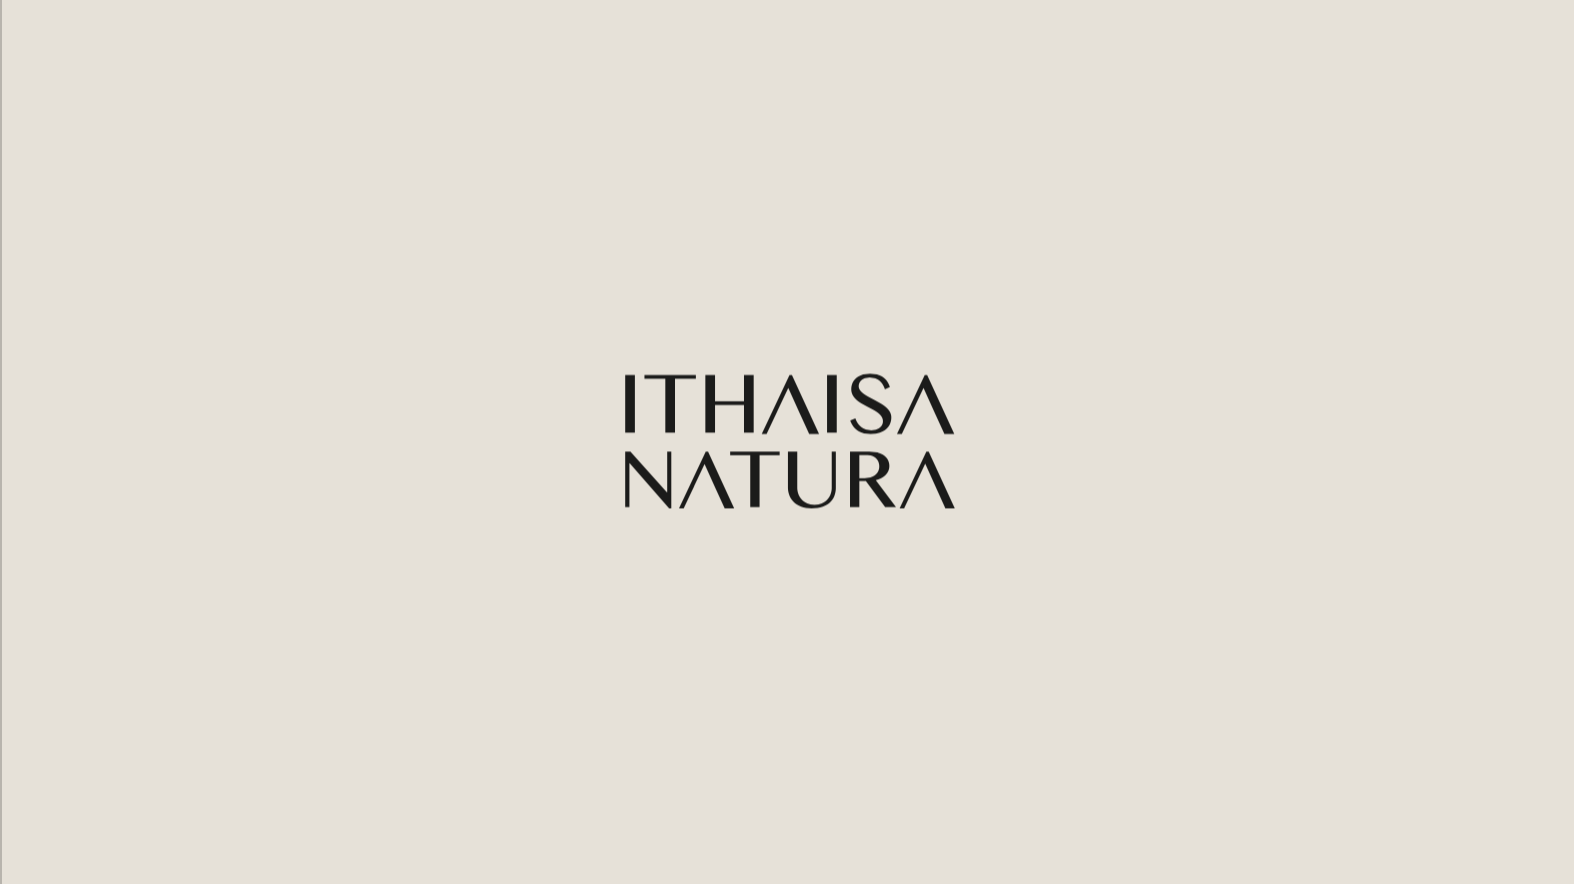 Ithaisa Natura